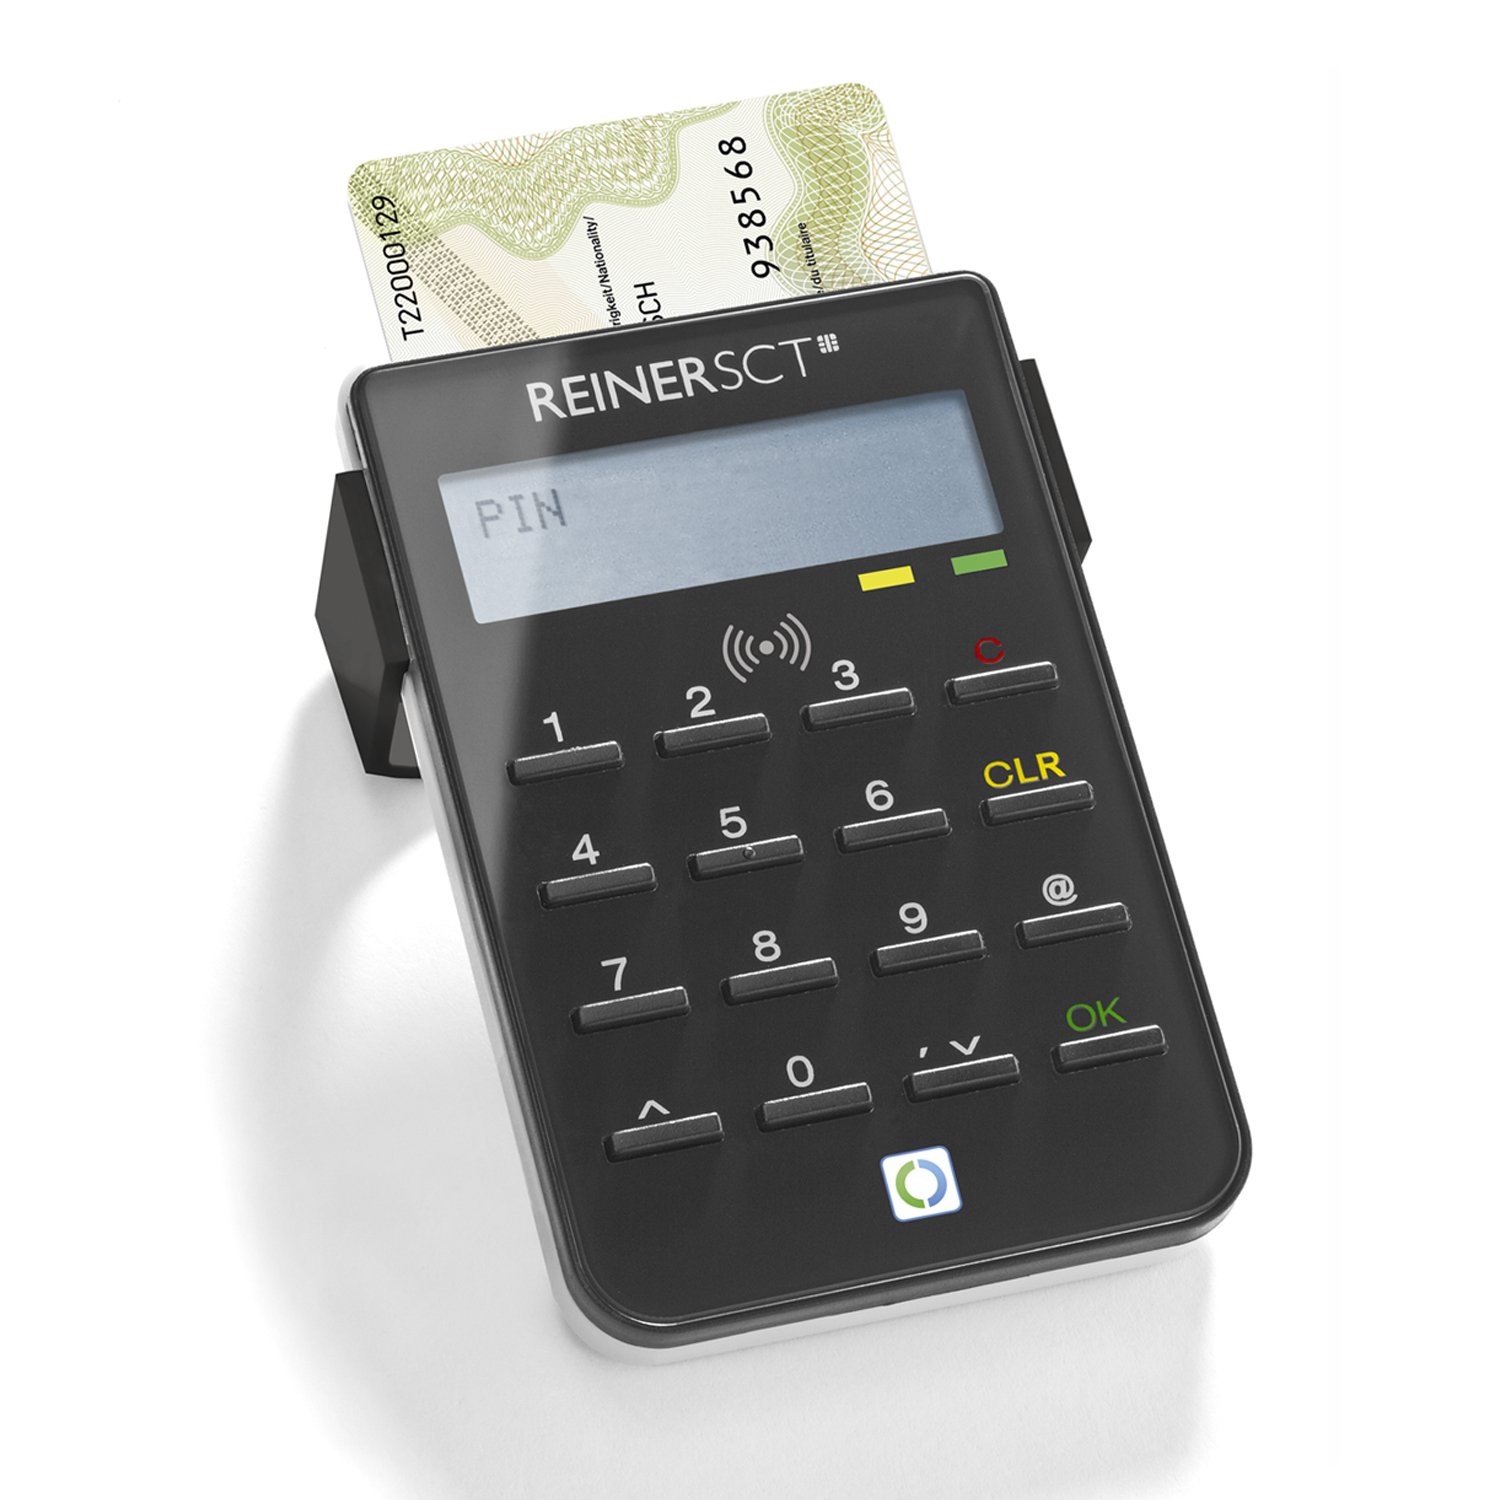 Reiner SCT cyberJack RFID standard - Der Standardleser für sicheres Onlinebanking und den neuen Personalausweis (nPA), schwarz